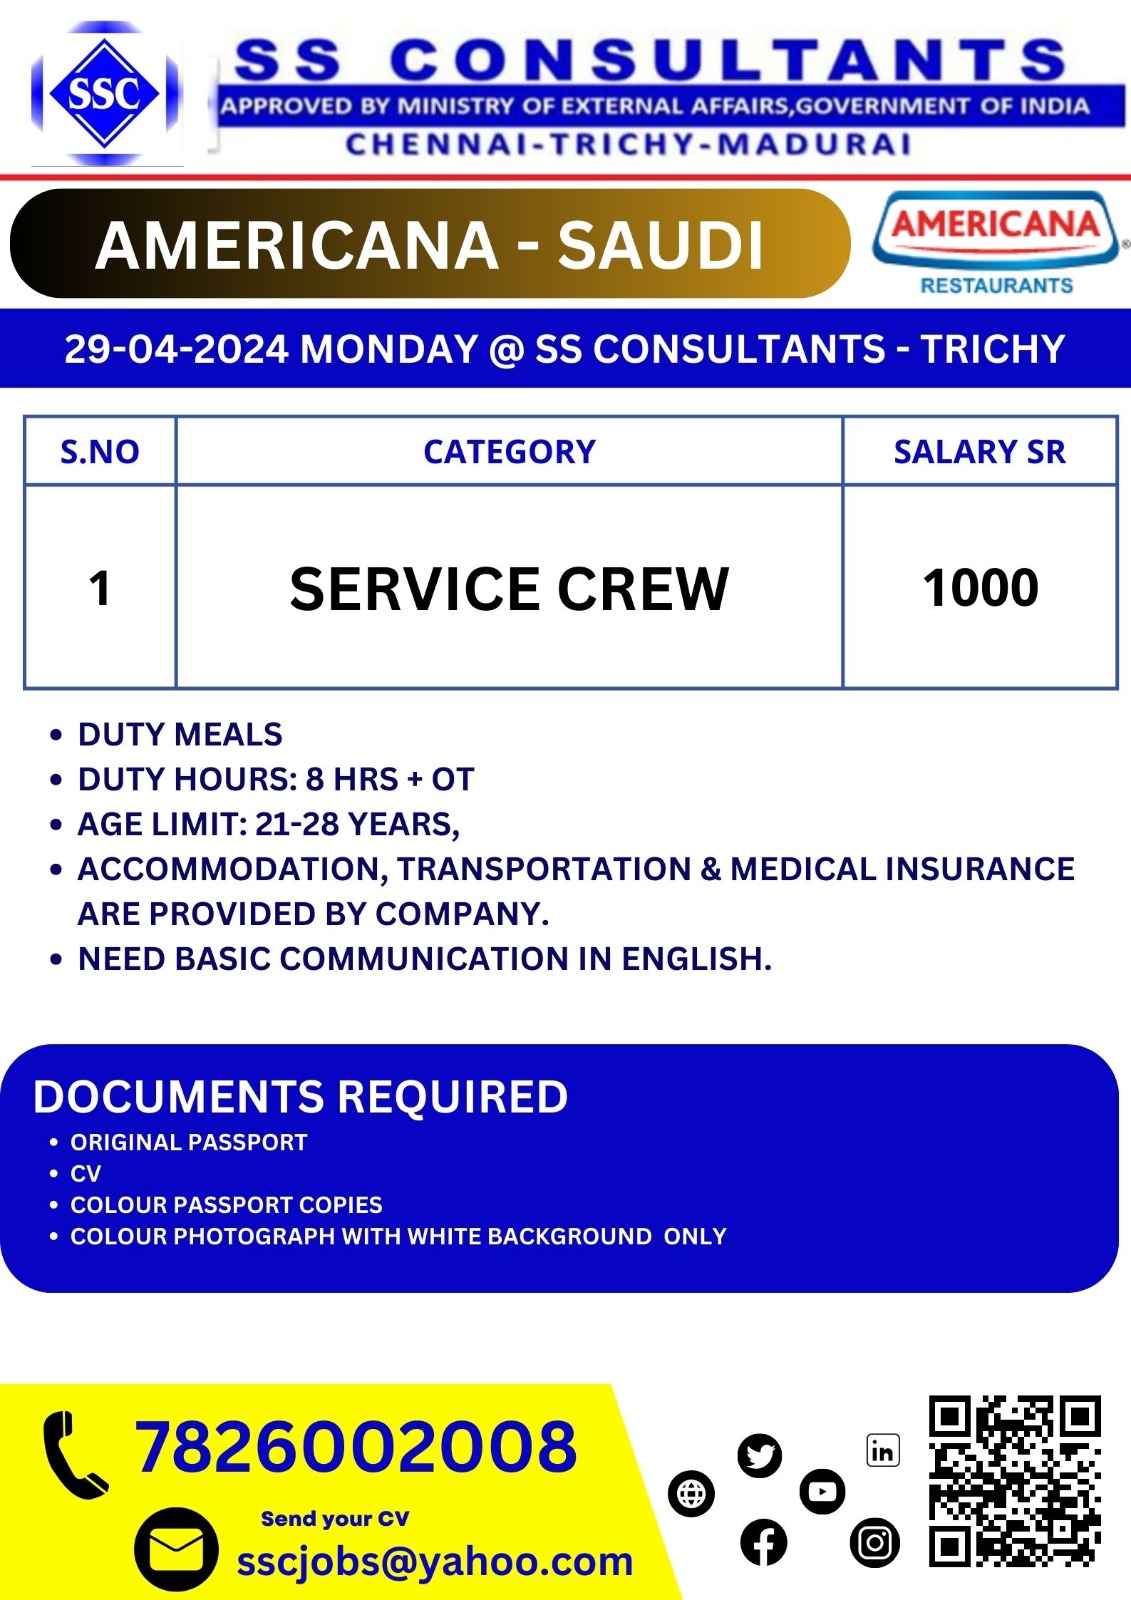 SERVICE CREW | AMERICANA – SAUDI